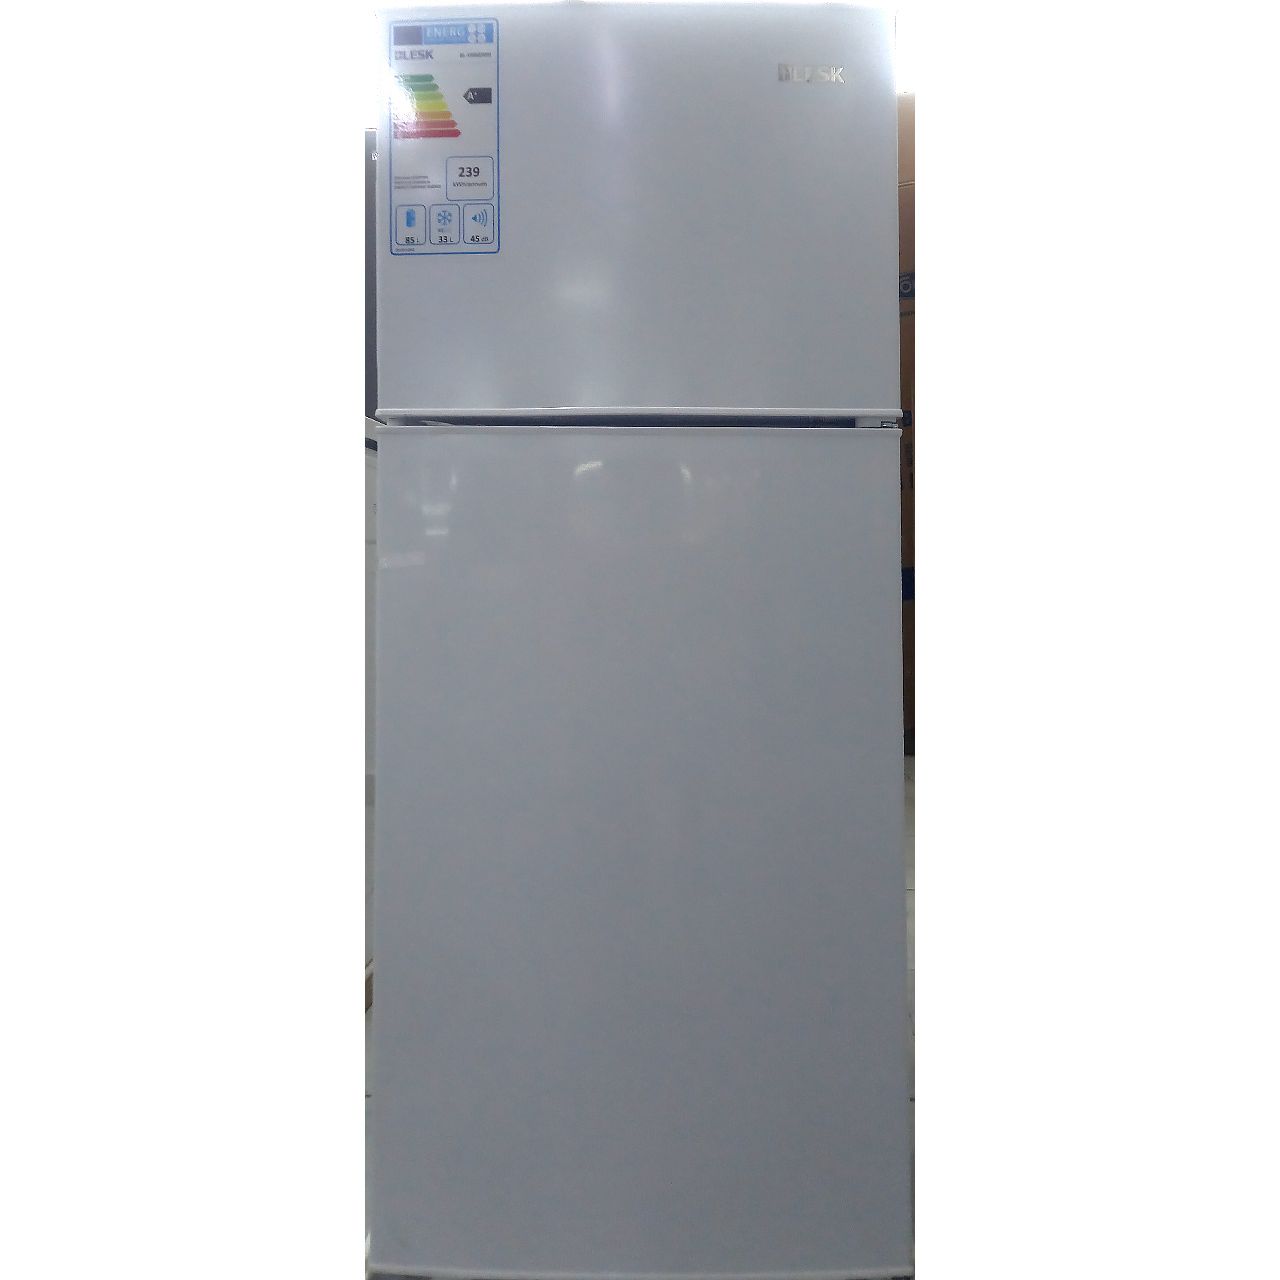 Холодильник двухкамерный Blesk 118 литров